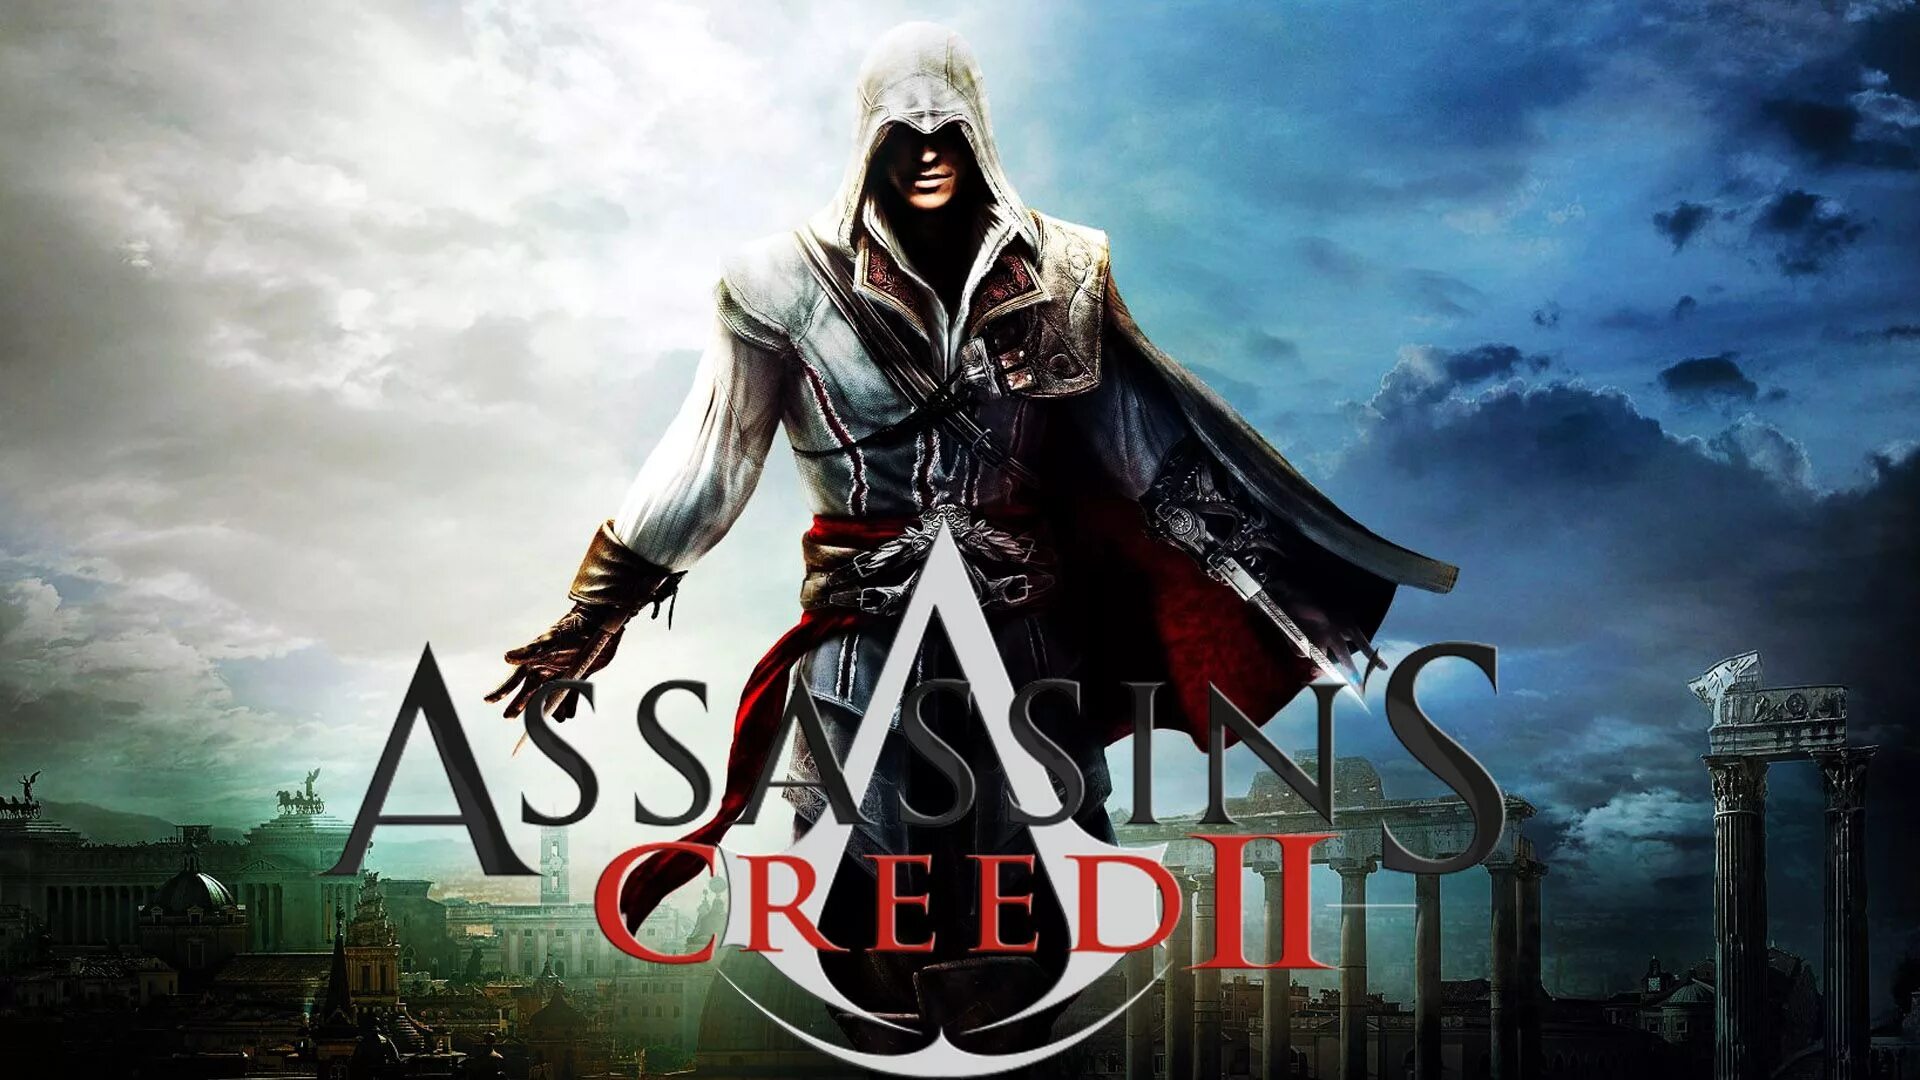 Assassin's creed soundtrack. Assassin's Creed 2 Постер. Ассасин Крид 2 обложка игры. Кредо убийцы 2.